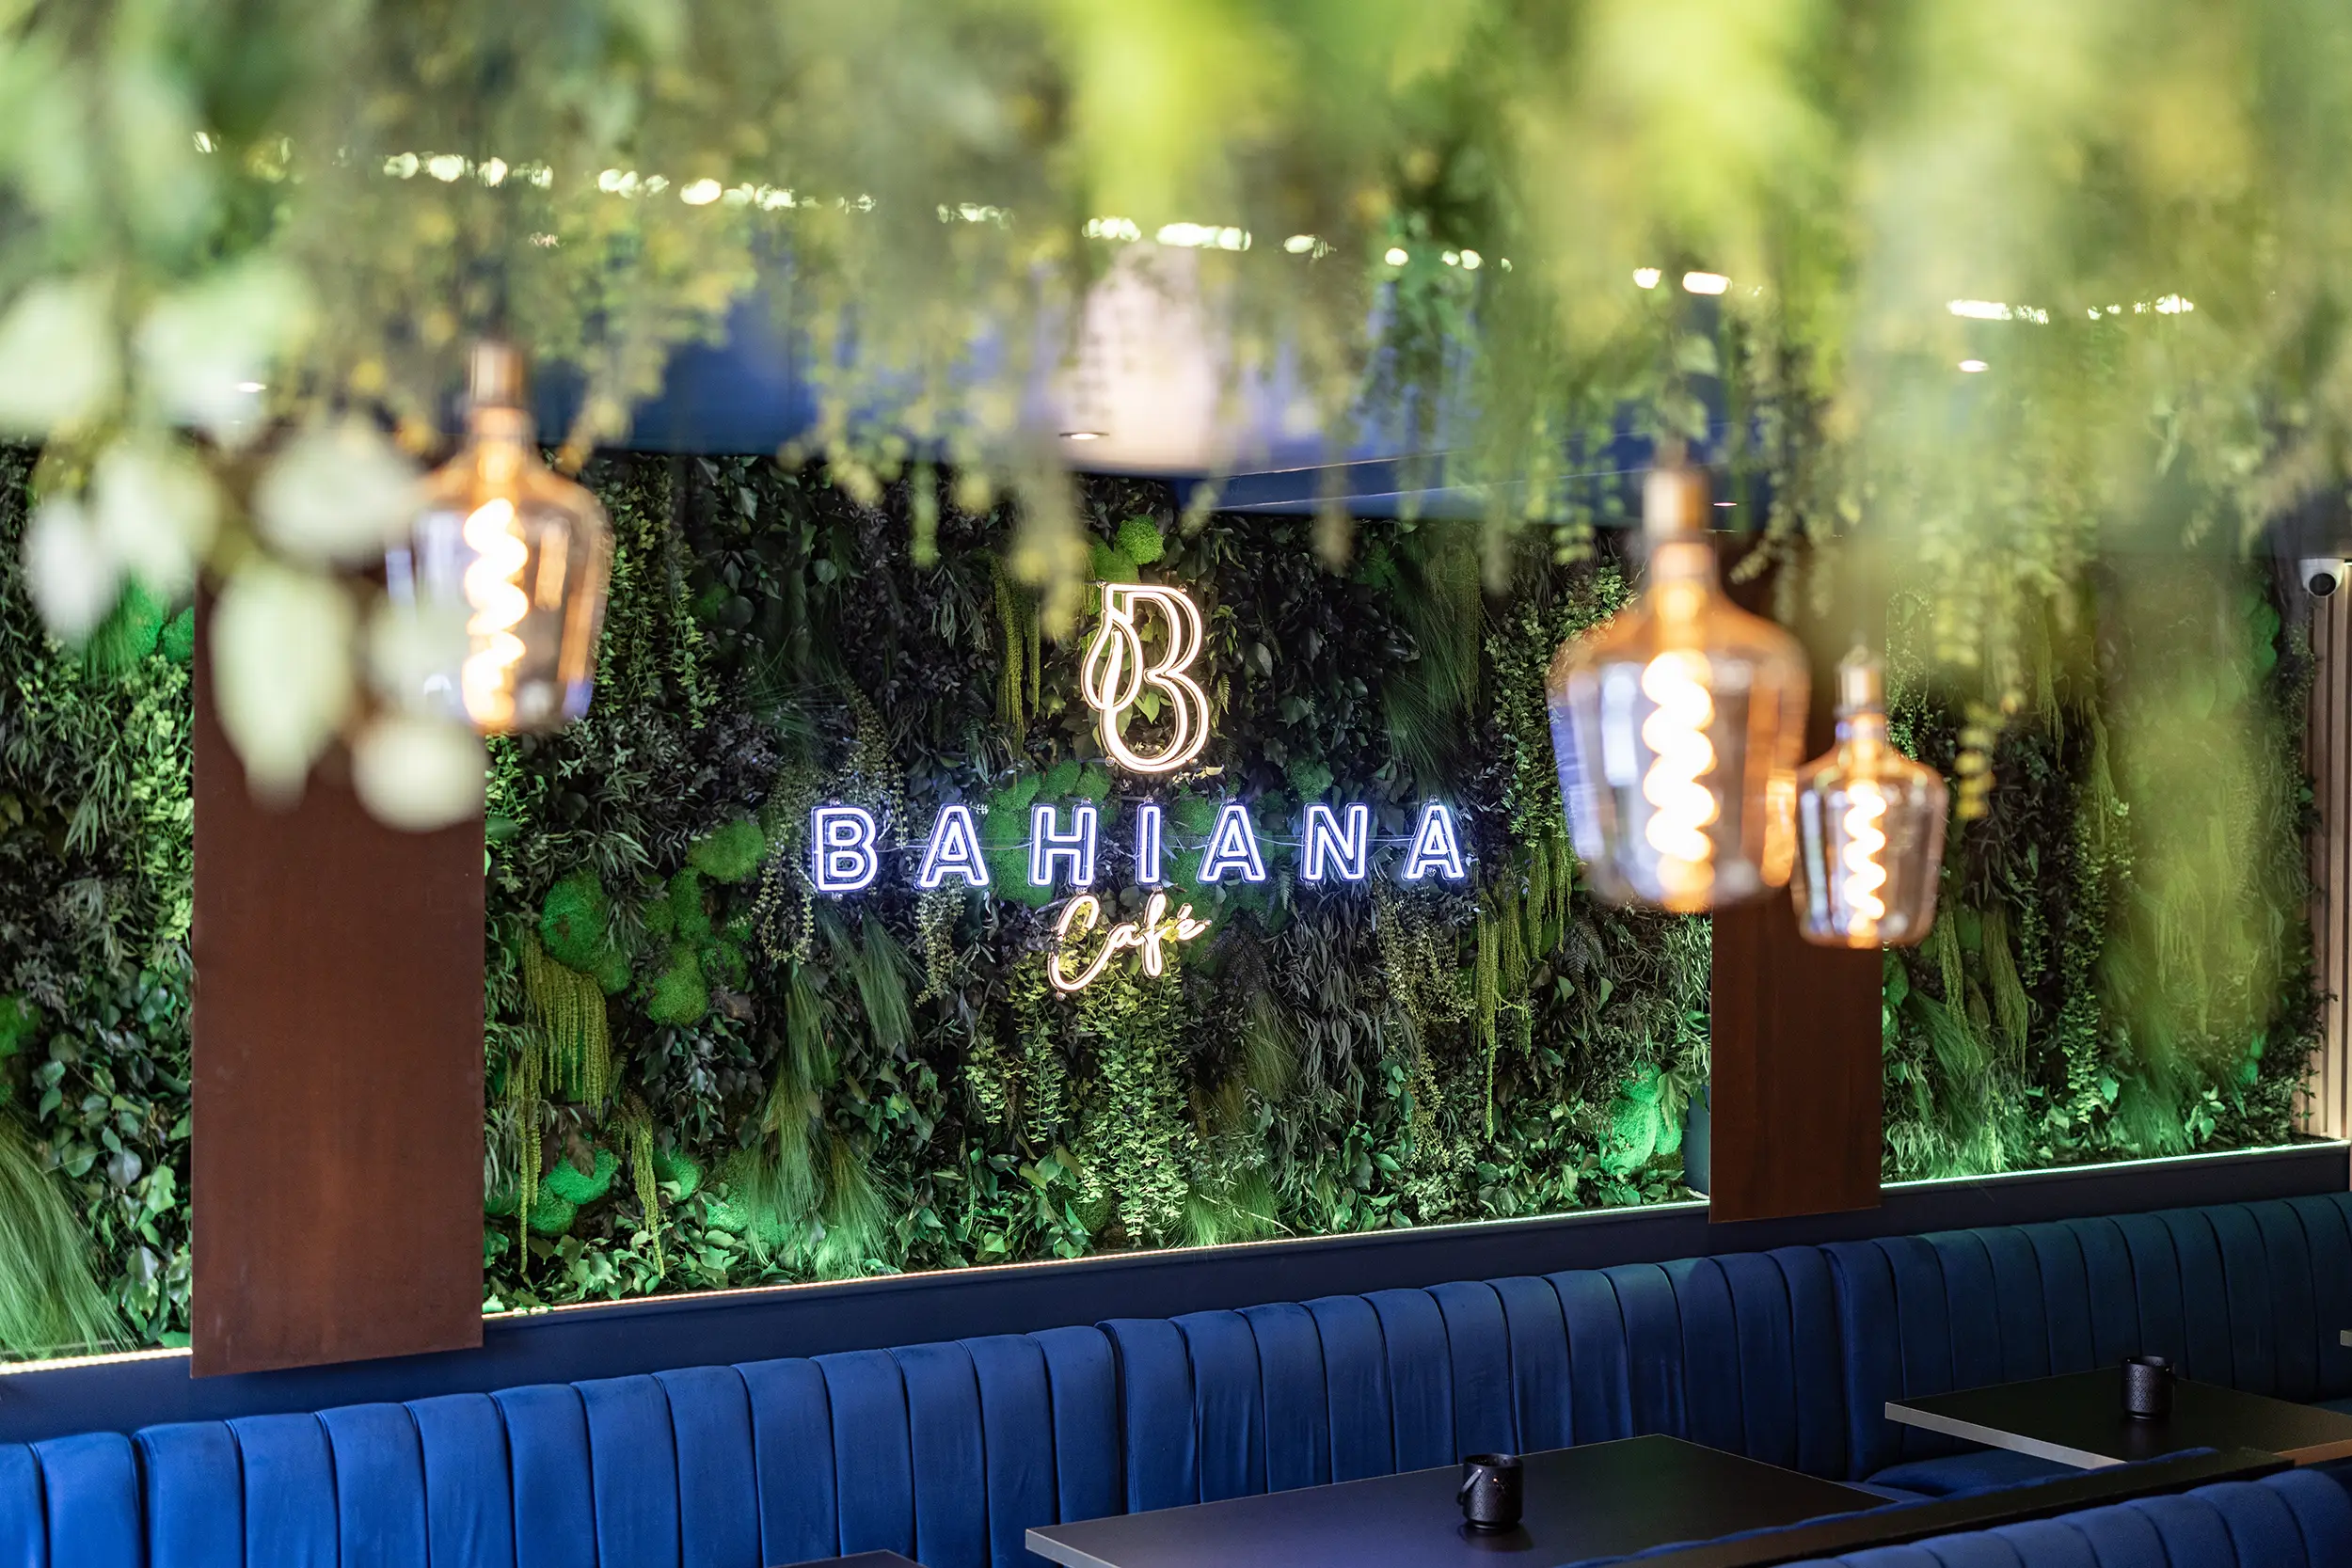 Mur et plafond végétal du Bahiana Café. C'est un bar restaurant à Paris aménagé en son et lumière par le Groupe Silam.